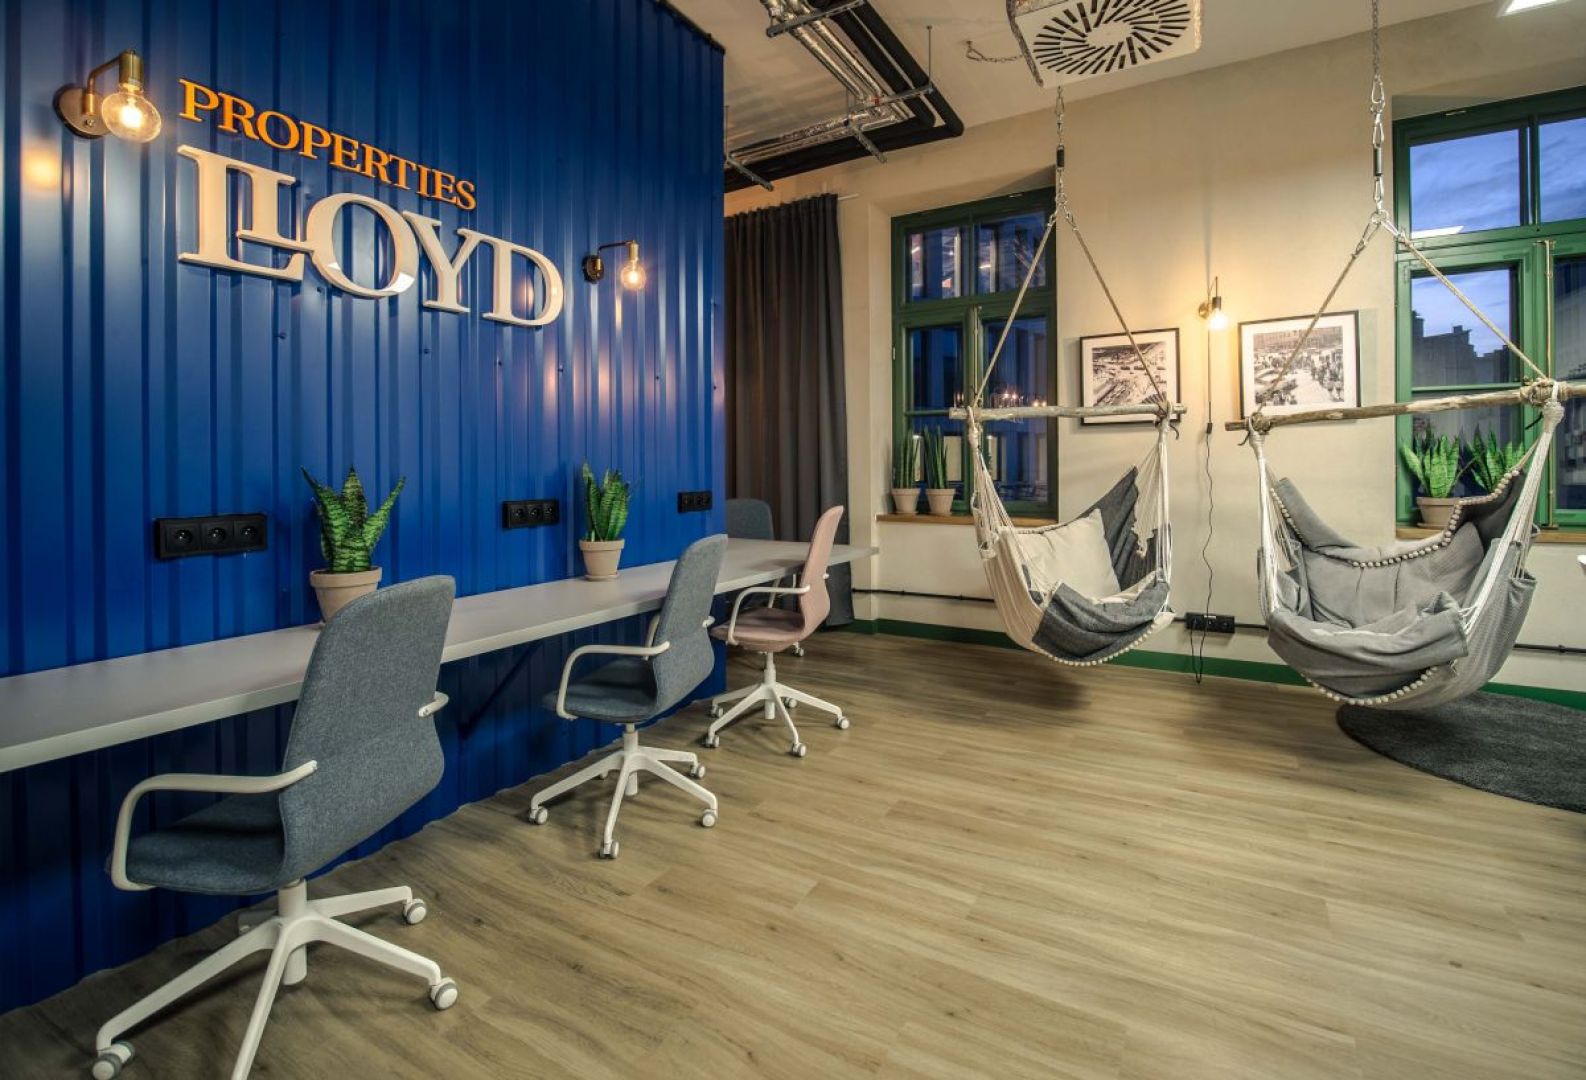 Biuro Lloyd Properties zlokalizowane w warszawskiej Hali Koszyki. Projekt: Forbis Group. Fot. Forbis Group